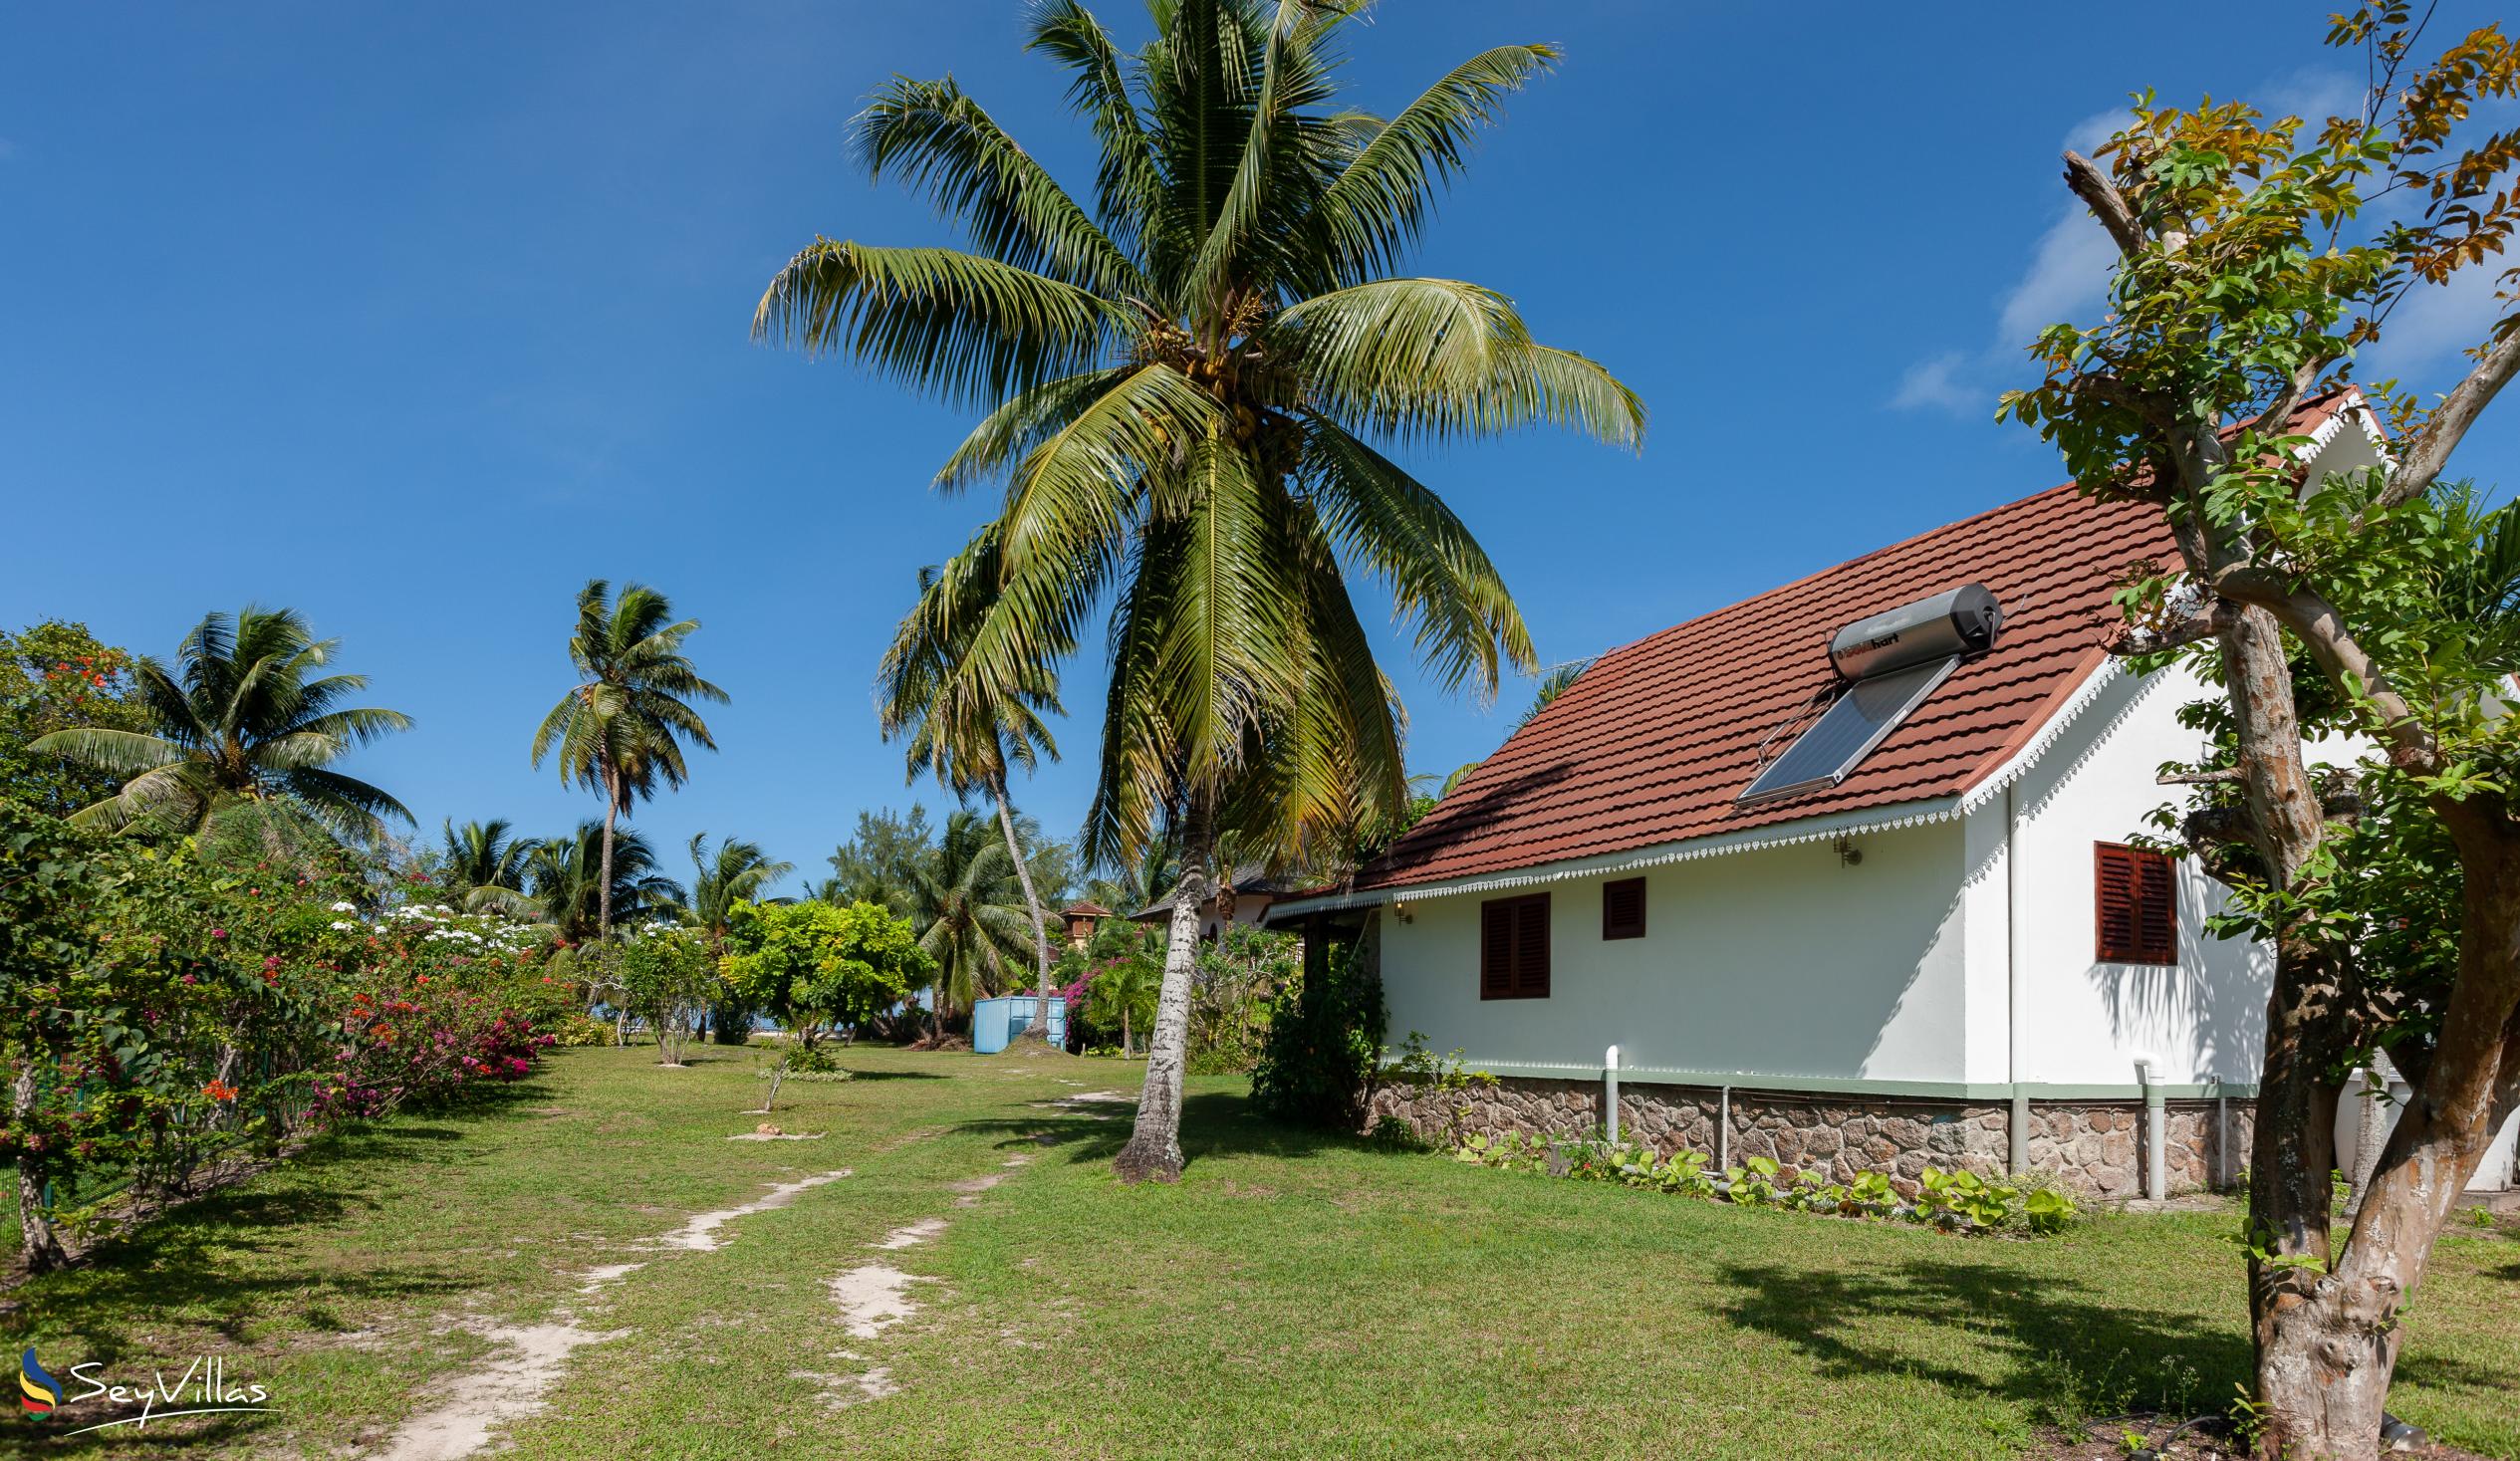 Photo 6: Villas Coco Beach - Outdoor area - Praslin (Seychelles)